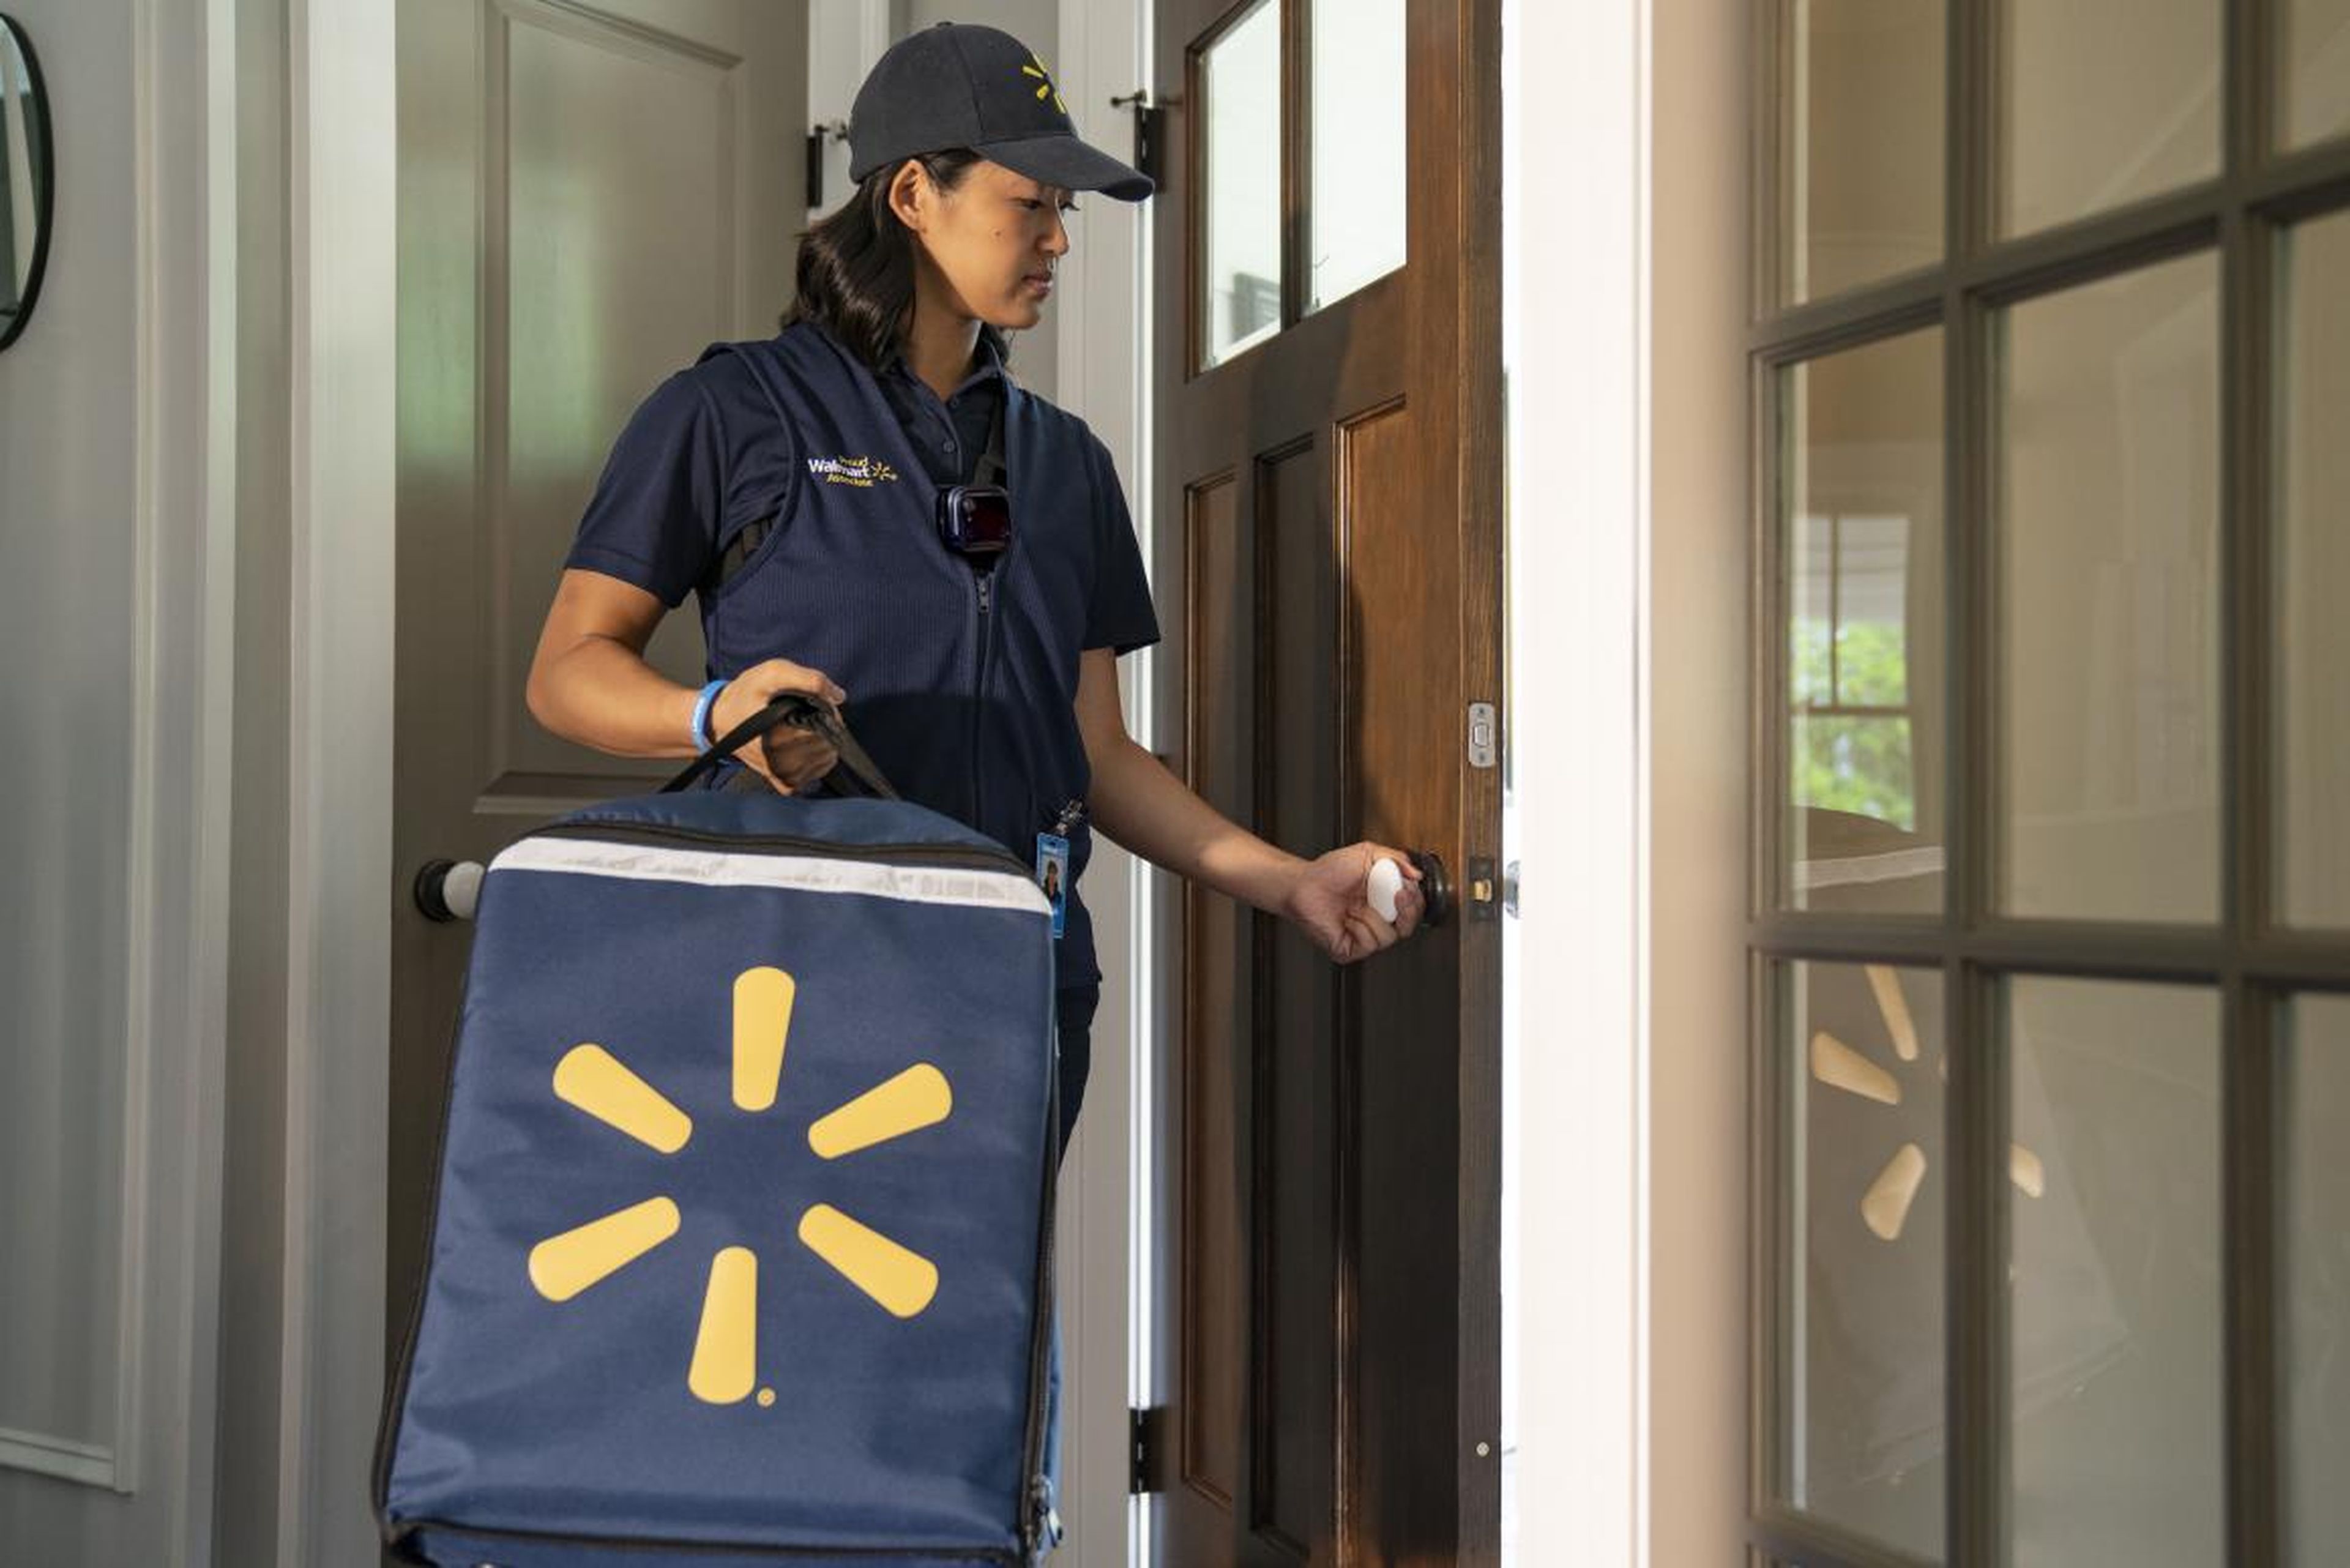 Los trabajadores de Walmart accederán a las casas de los clientes mediante un sistema de cerraduras inteligentes.